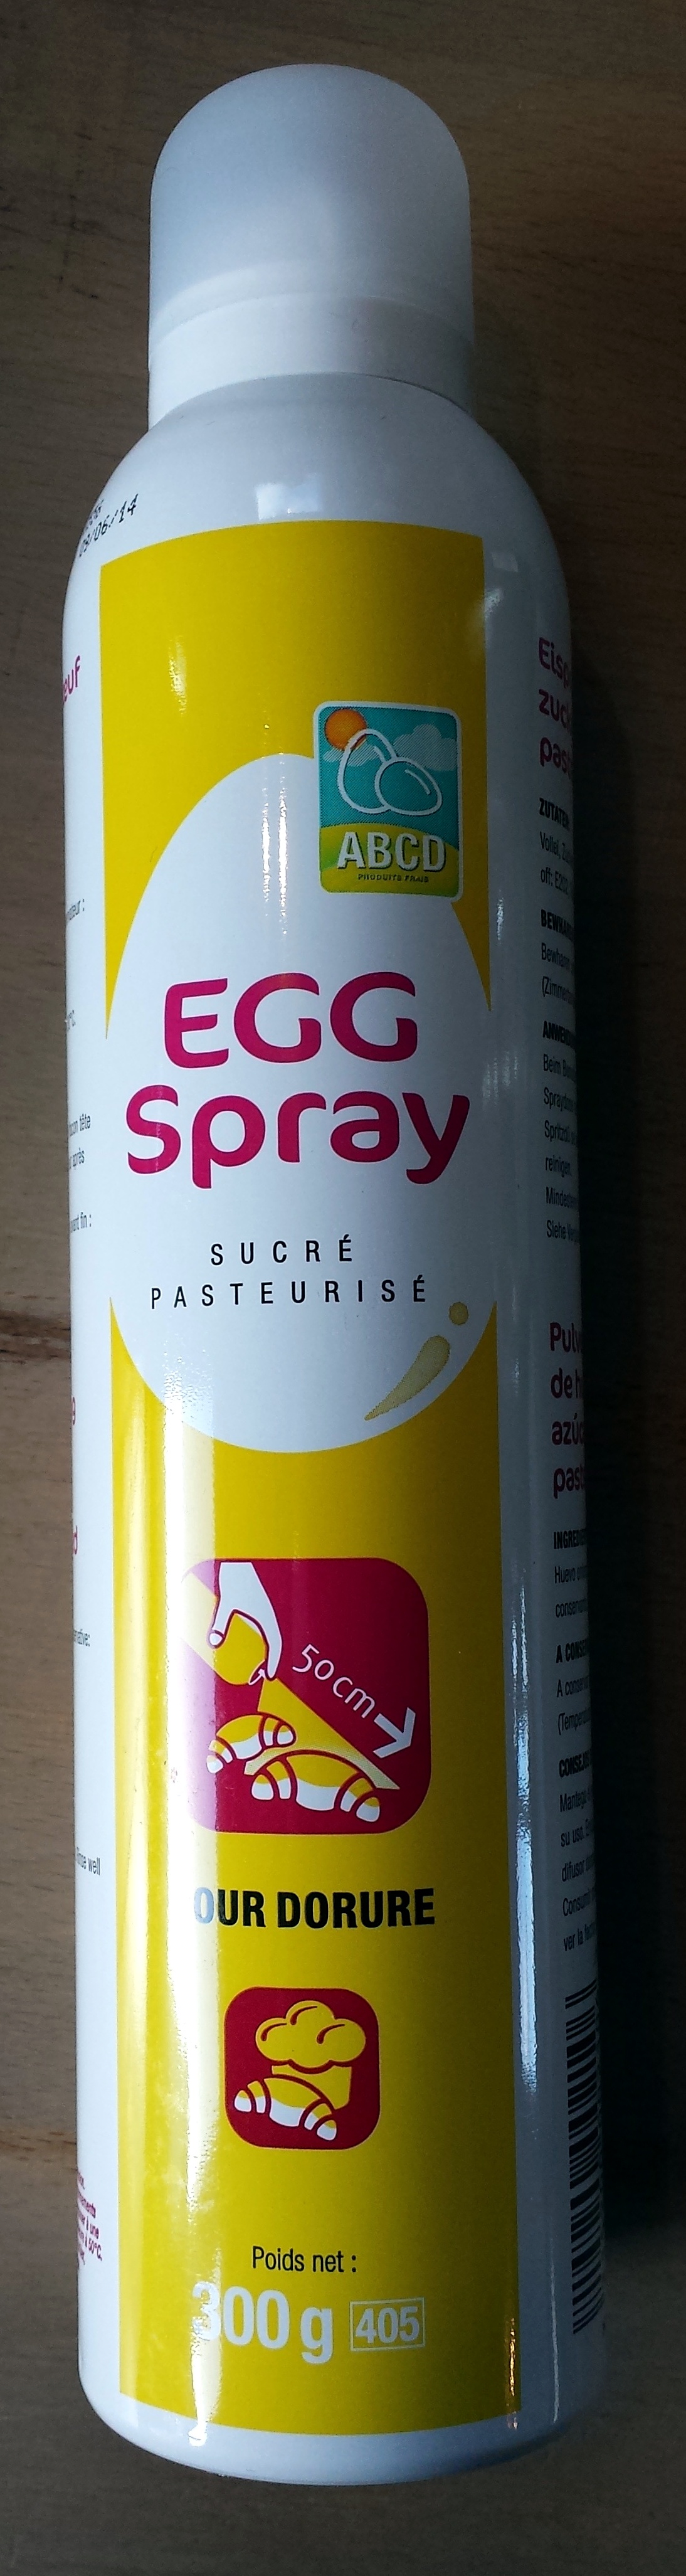 Egg spray sucré pasteurisé pour dorure - Product - fr